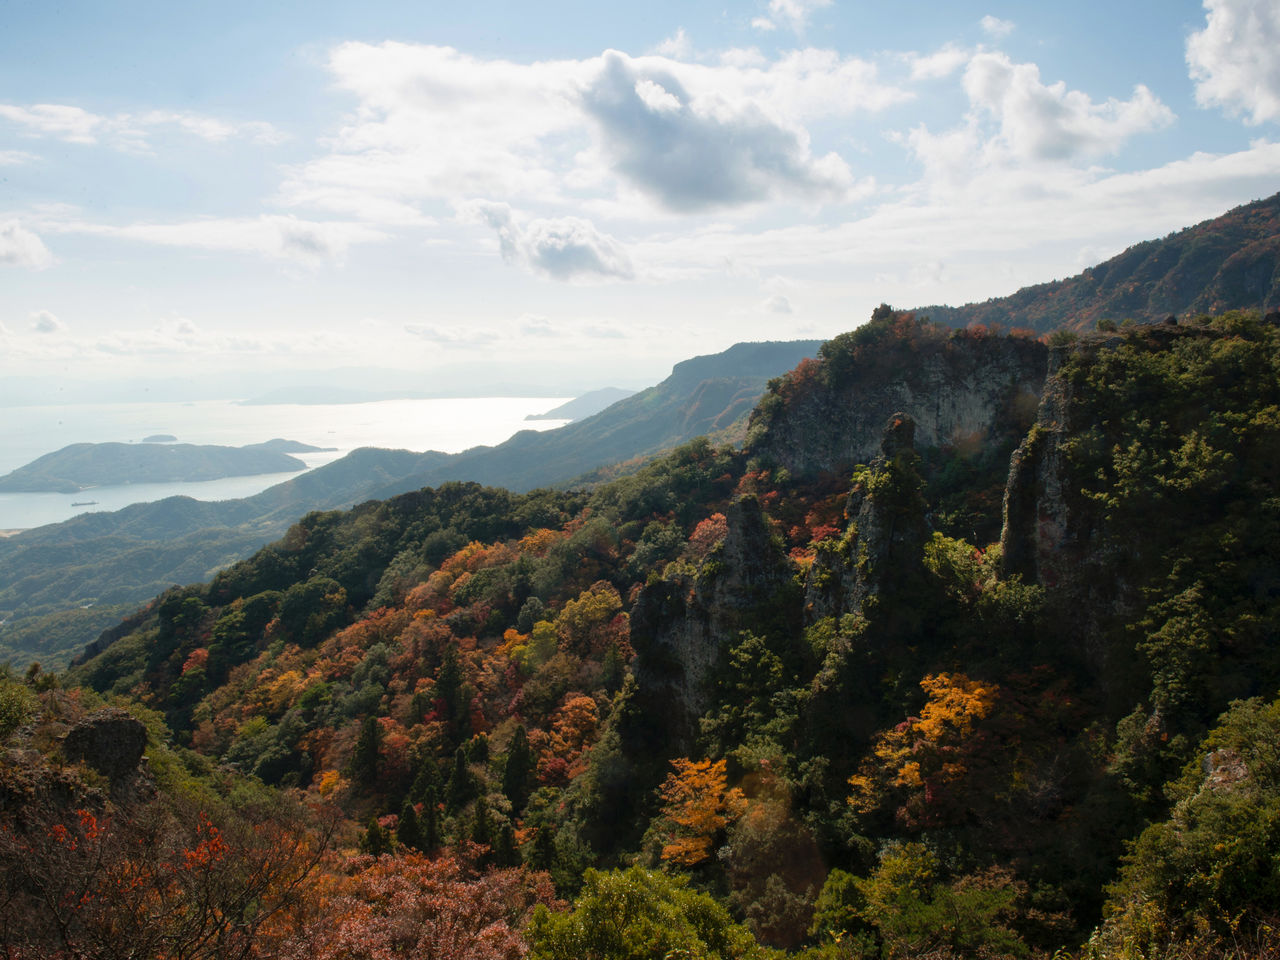 从表登山道之一景“四望顶”眺望红叶正浓的寒霞溪。中间偏右侧可以看到乌帽子岩